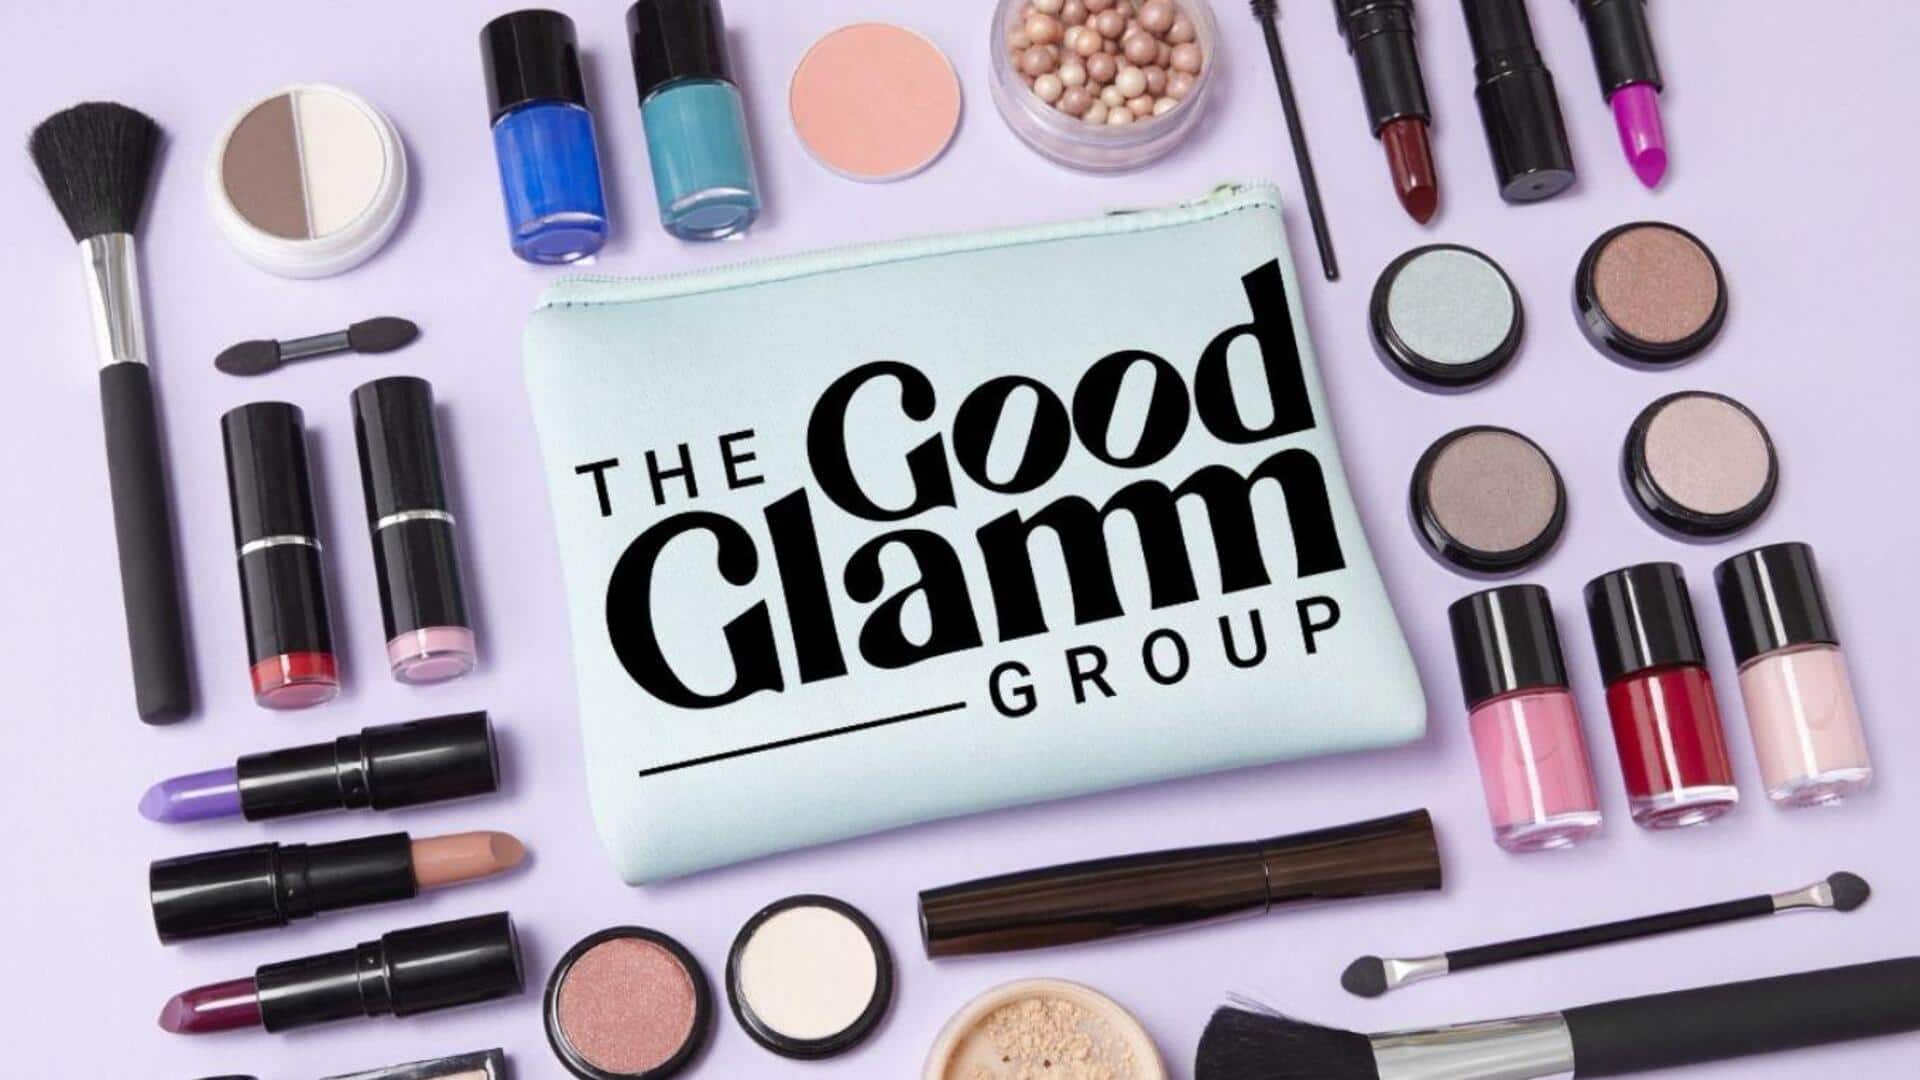 Good Glamm Group receives default notices over unpaid acquisition debts